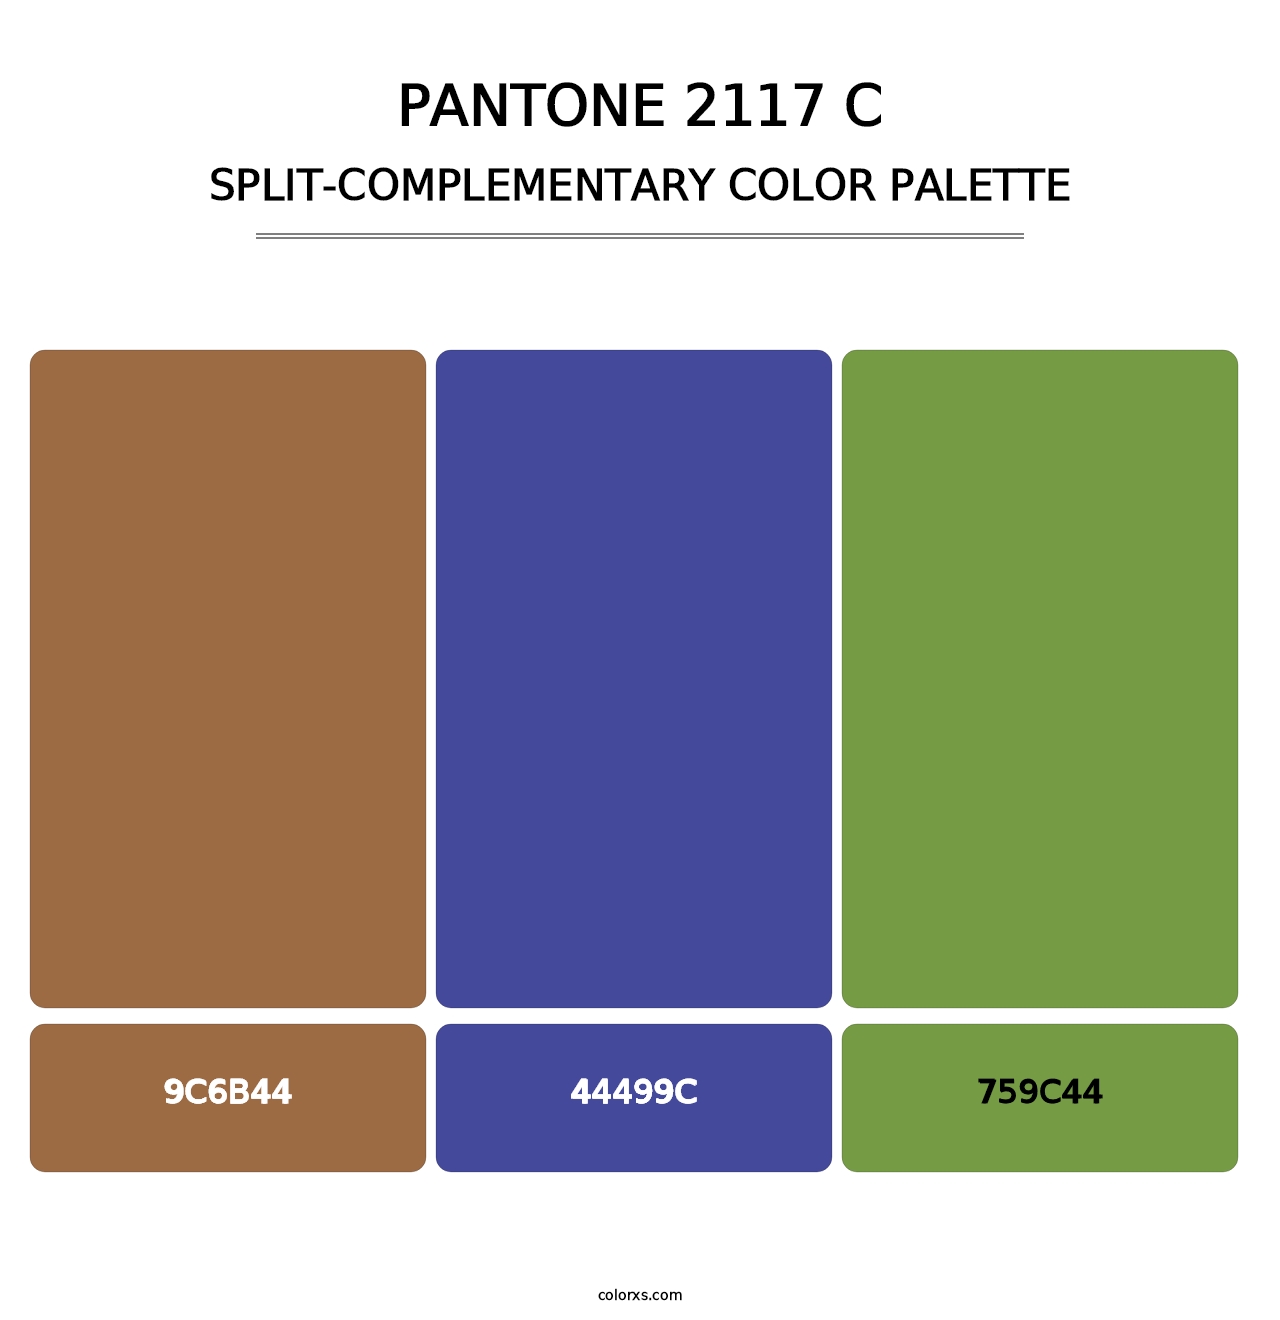 PANTONE 2117 C - Split-Complementary Color Palette